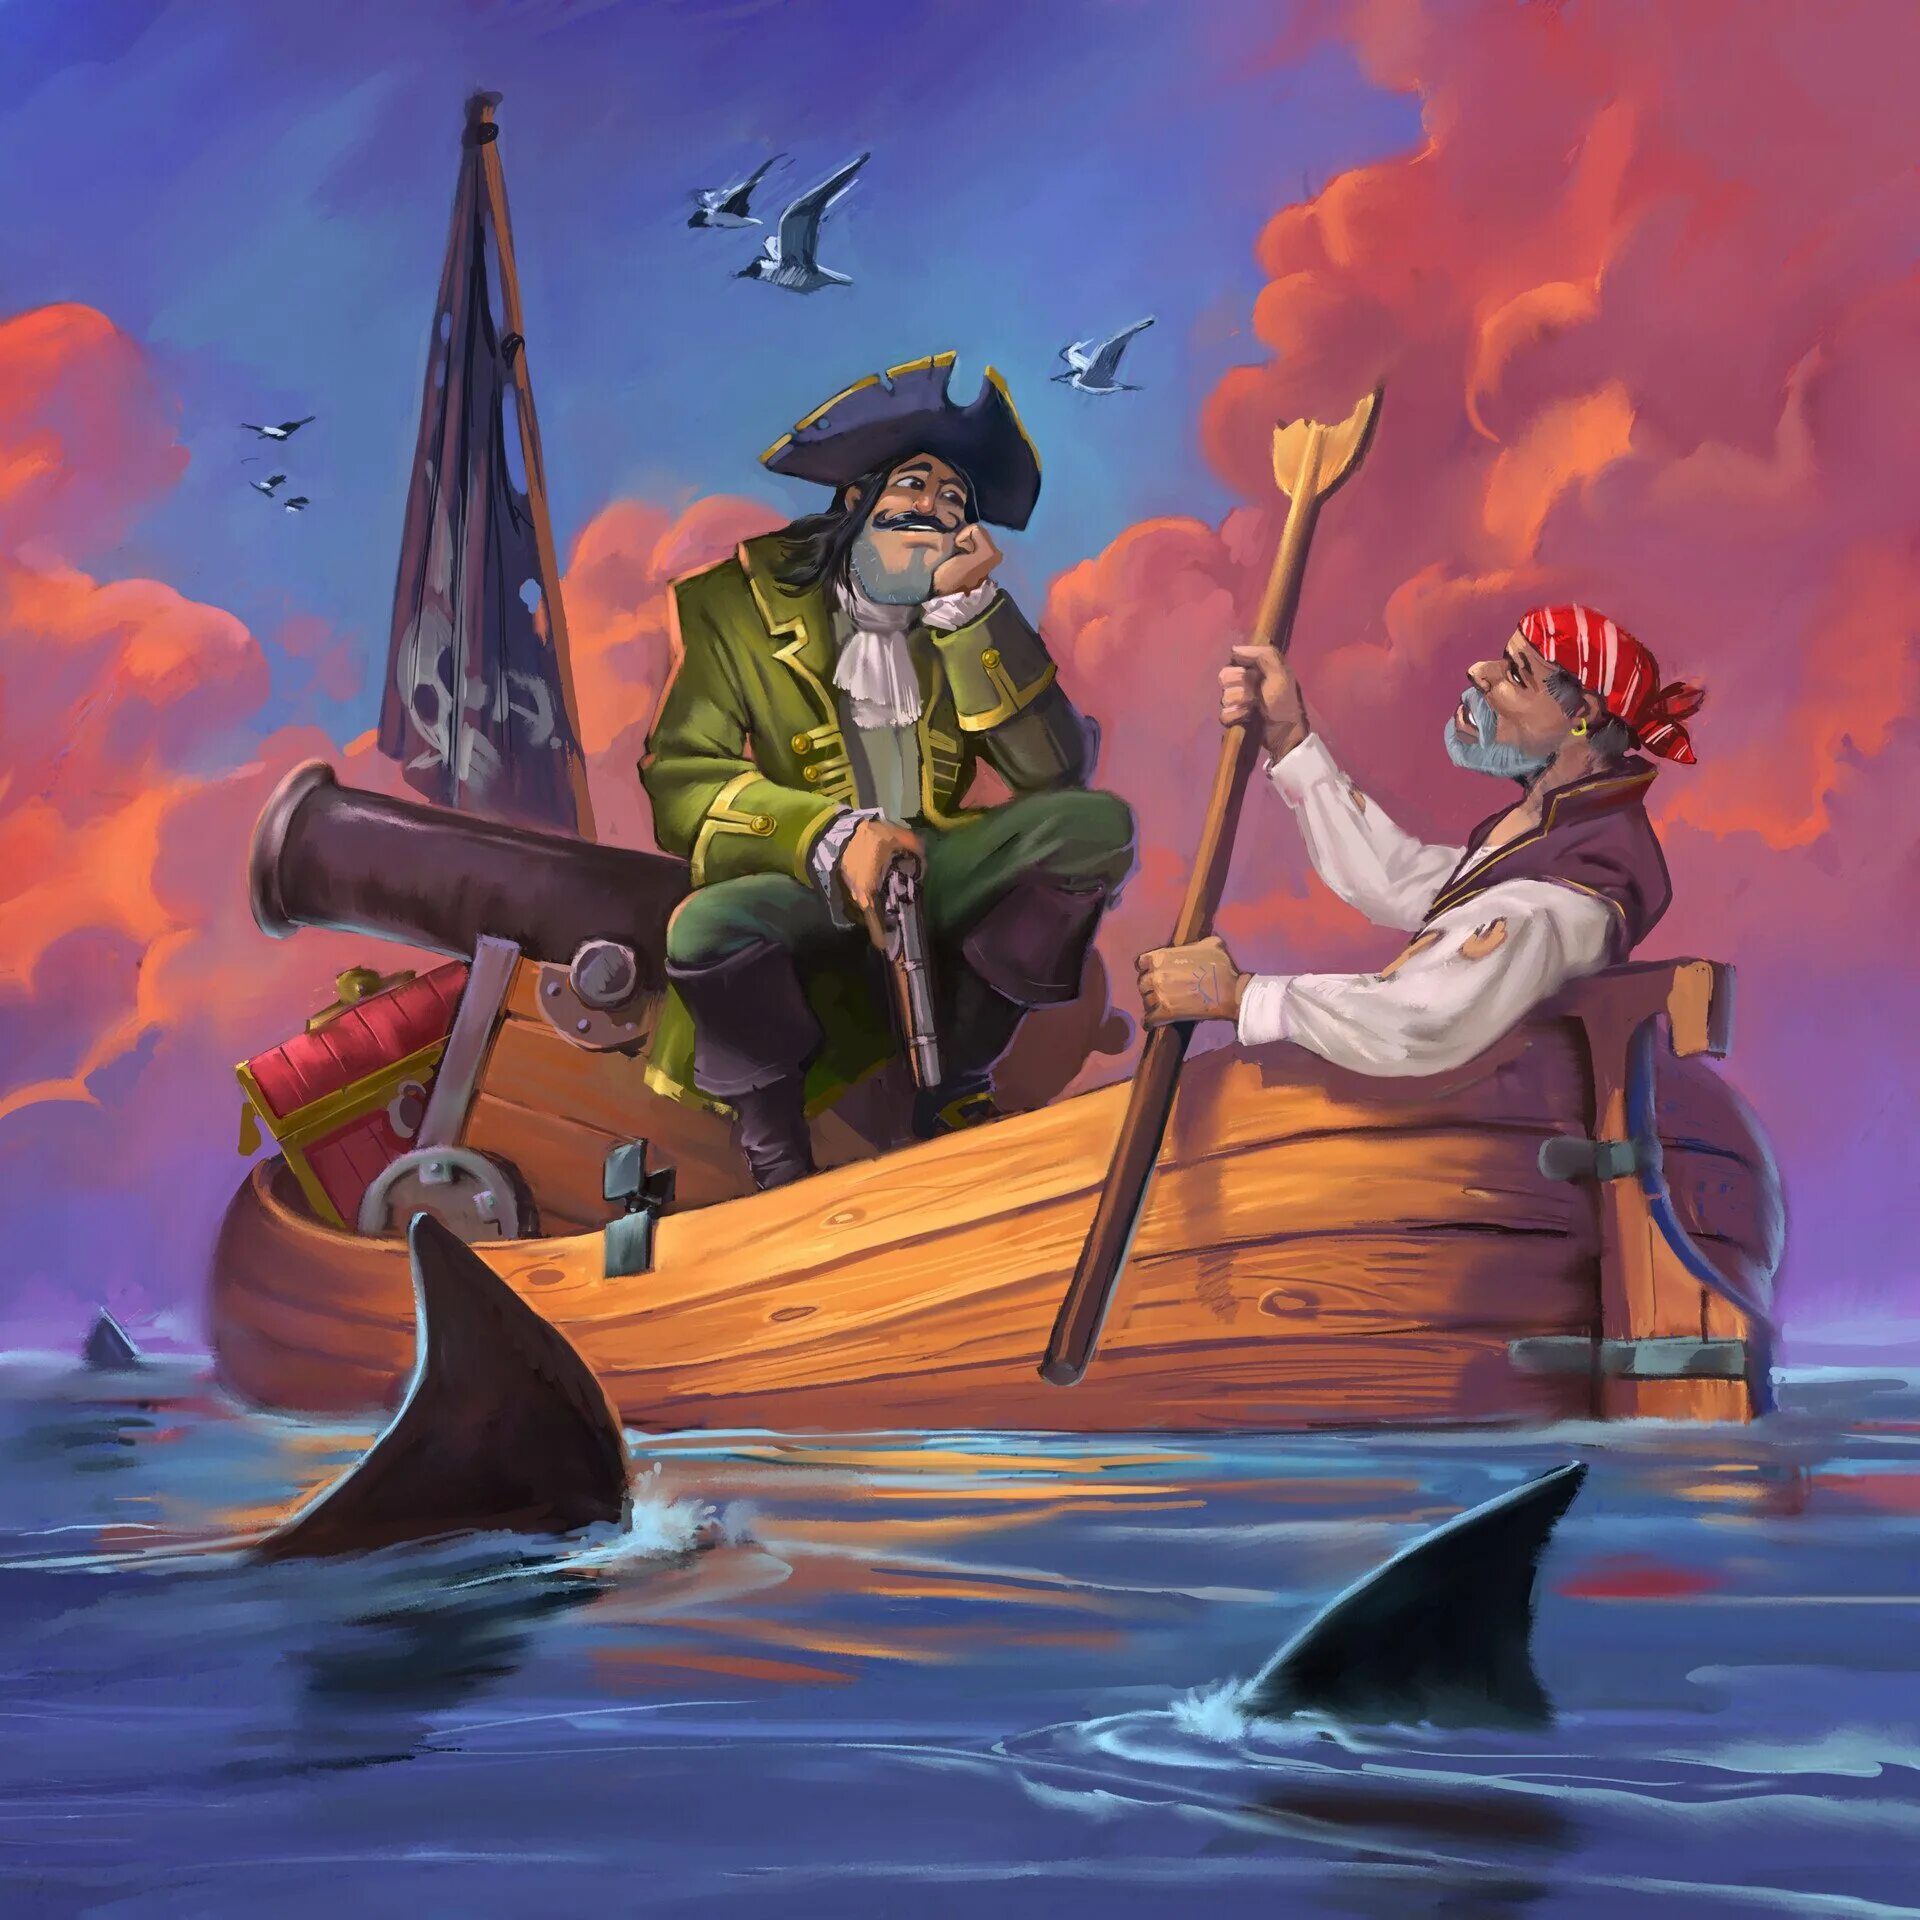 Где пираты там. Буканьеры Корсары пираты. Флибустьер пират корабль живопись арт. Капитан Кидд пират. Пират иллюстрация.